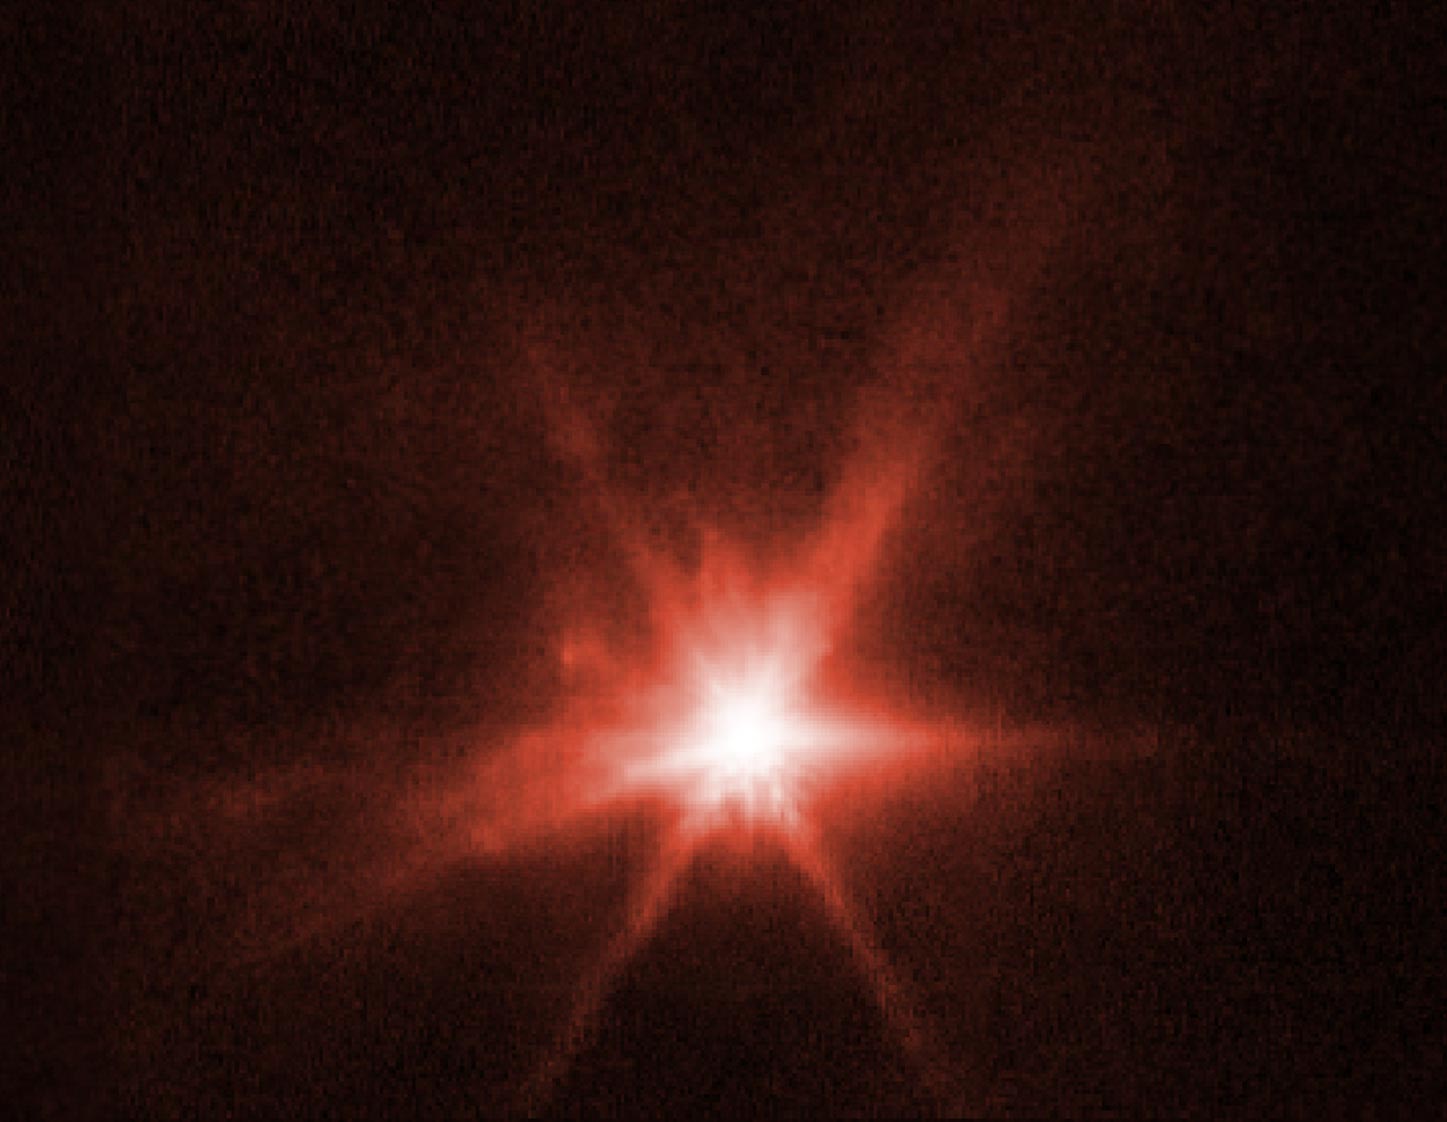 Hubble/Webb Side-by-Side of Dimorphos Ejecta